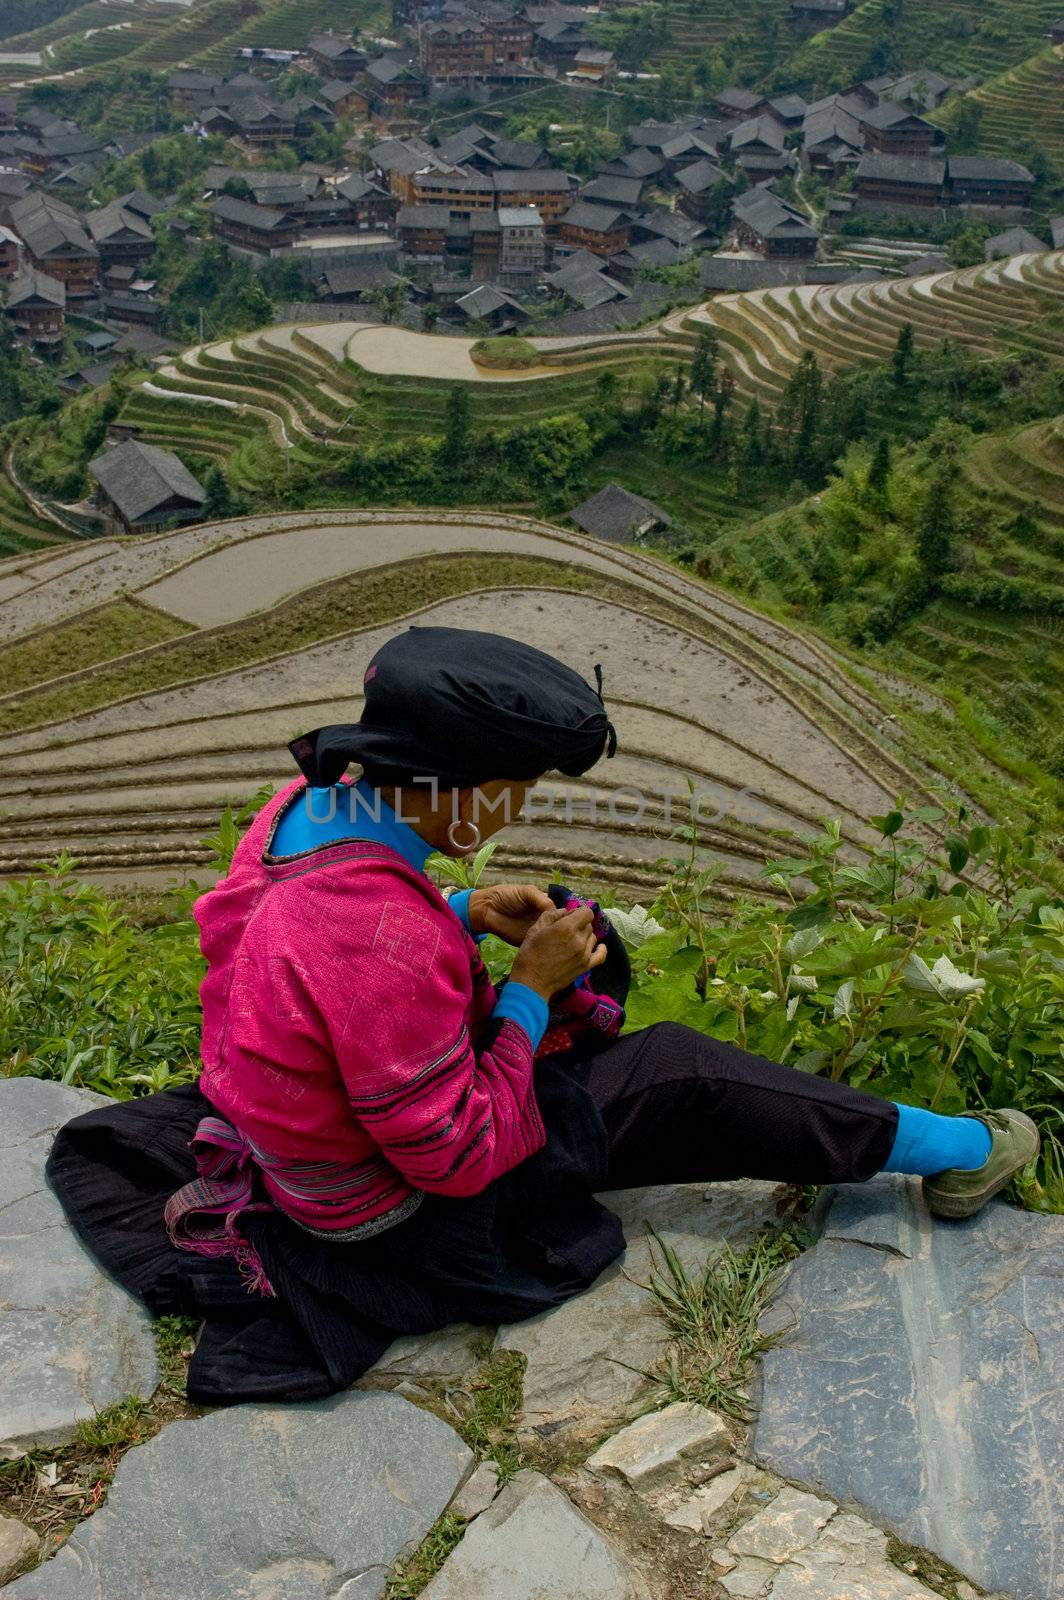 Woman sewing overlooking Longji Rice Terraces in Guangxi China